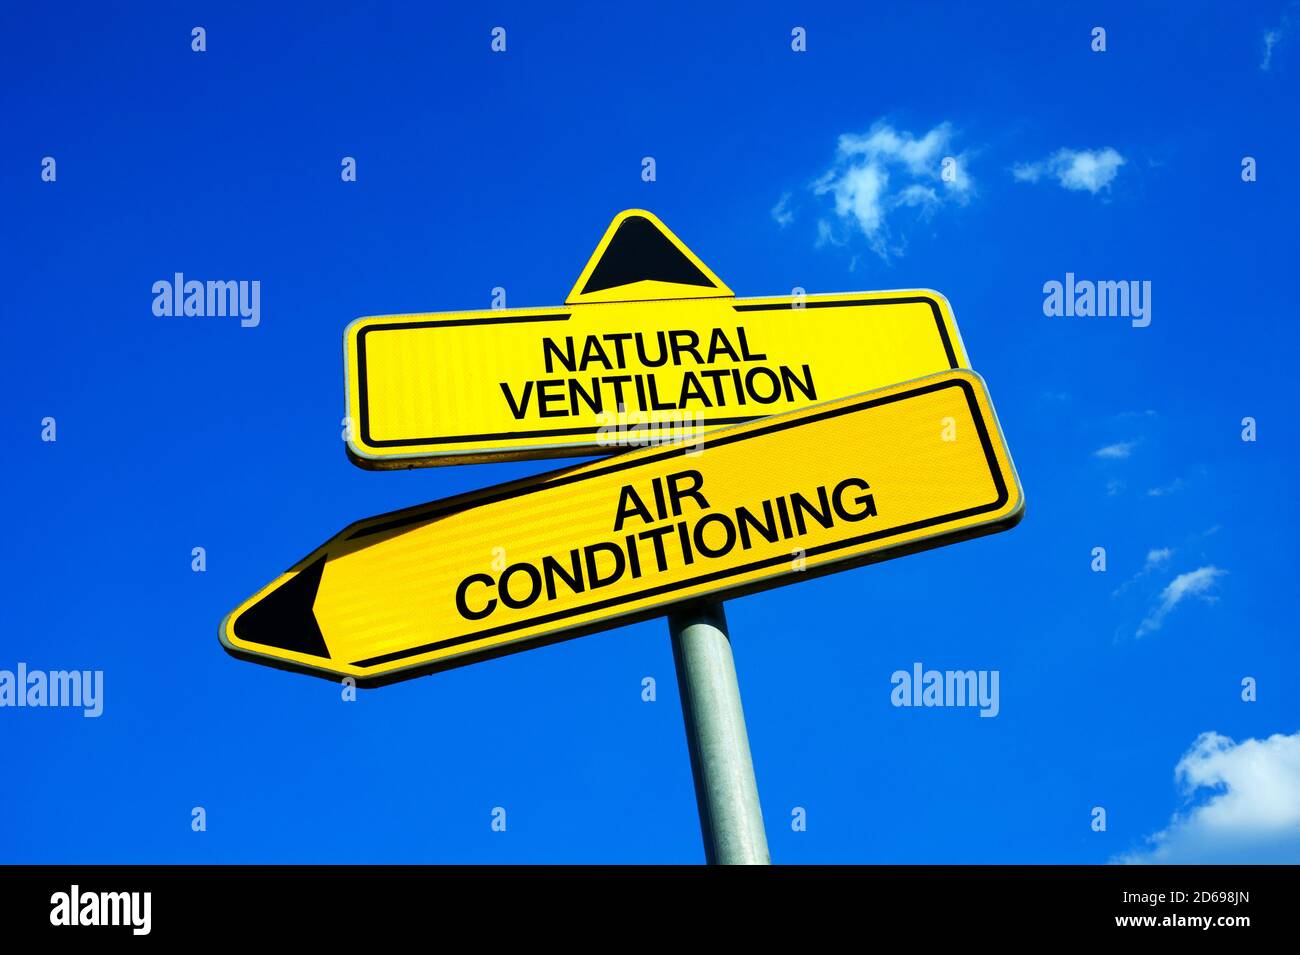 Ventilación natural vs Aire acondicionado - señal de tráfico con dos opciones - enfriamiento artificial y regulación de la temperatura interior vs refrigeración pasiva a Foto de stock